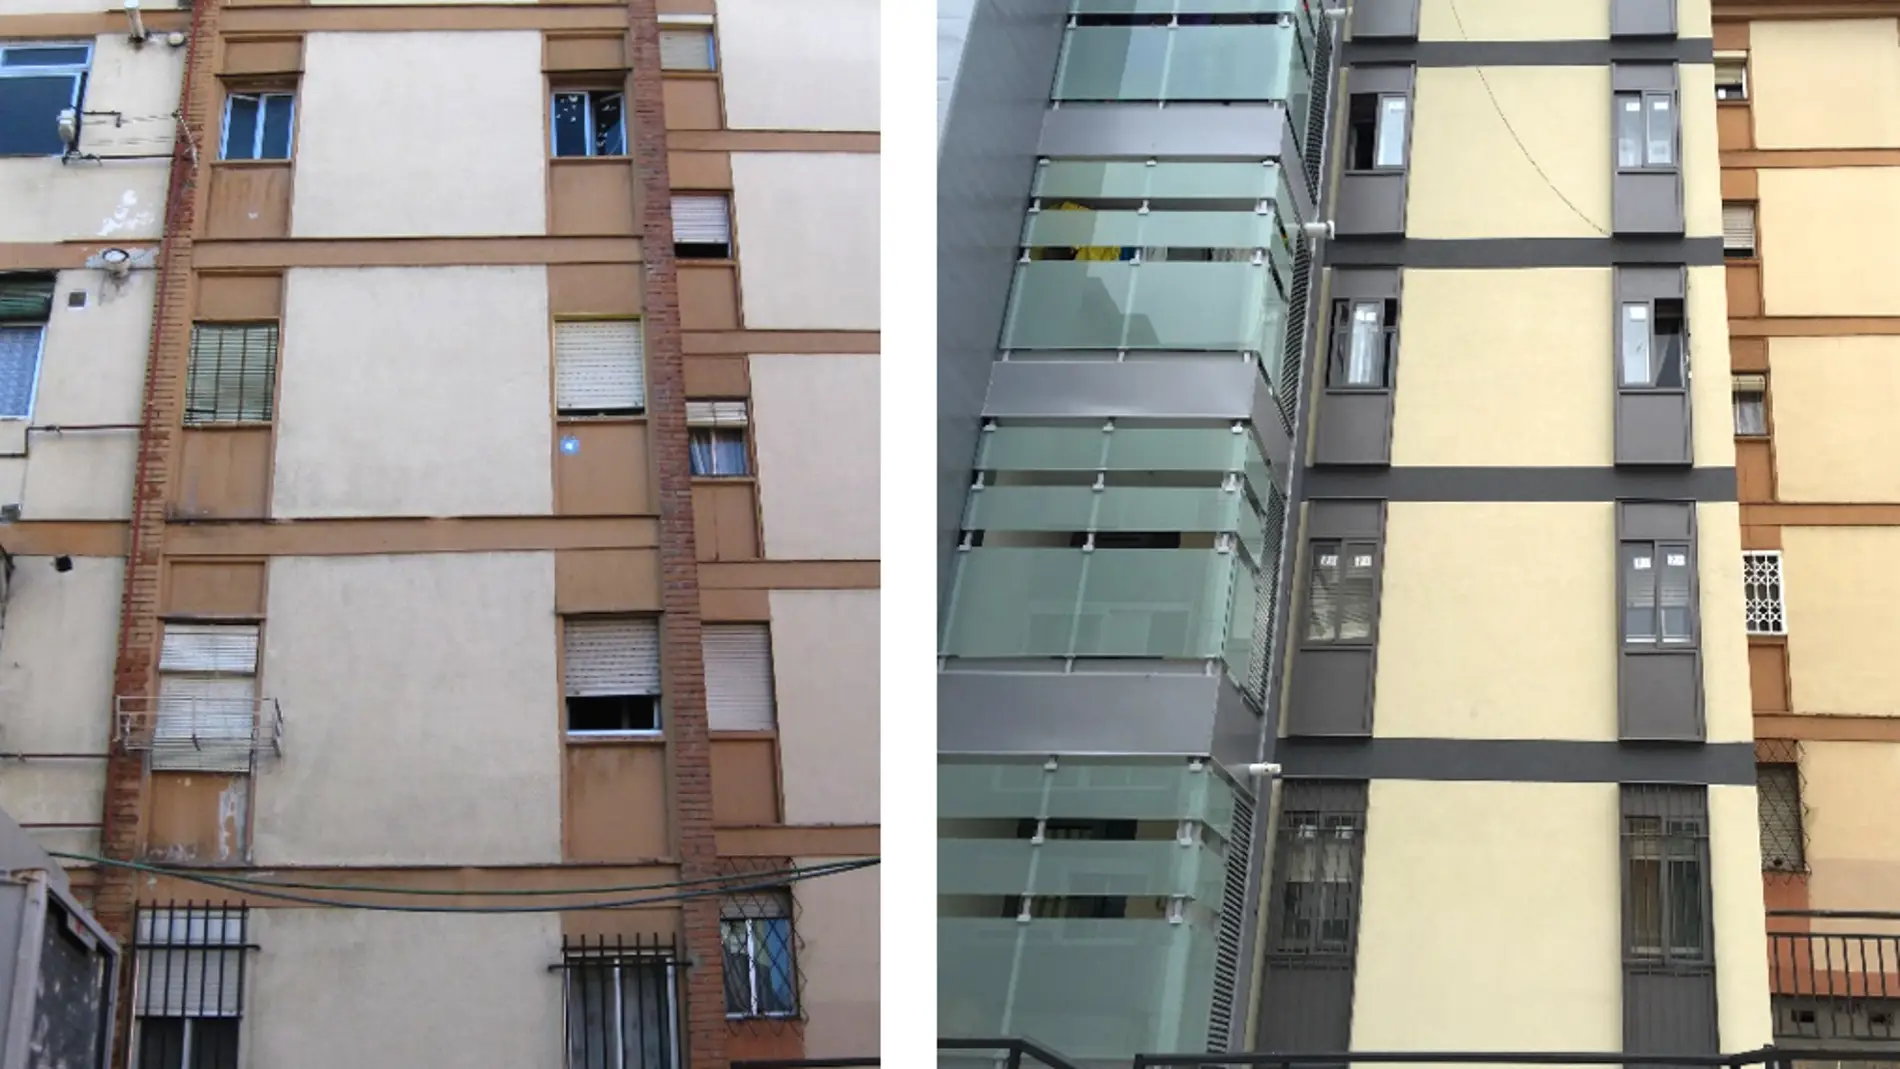 Edificio de viviendas rehabilitado. Fachada principal norte. Original (izquierda) Rehabilitado (derecha). Autor: Sheila Varela Luján.